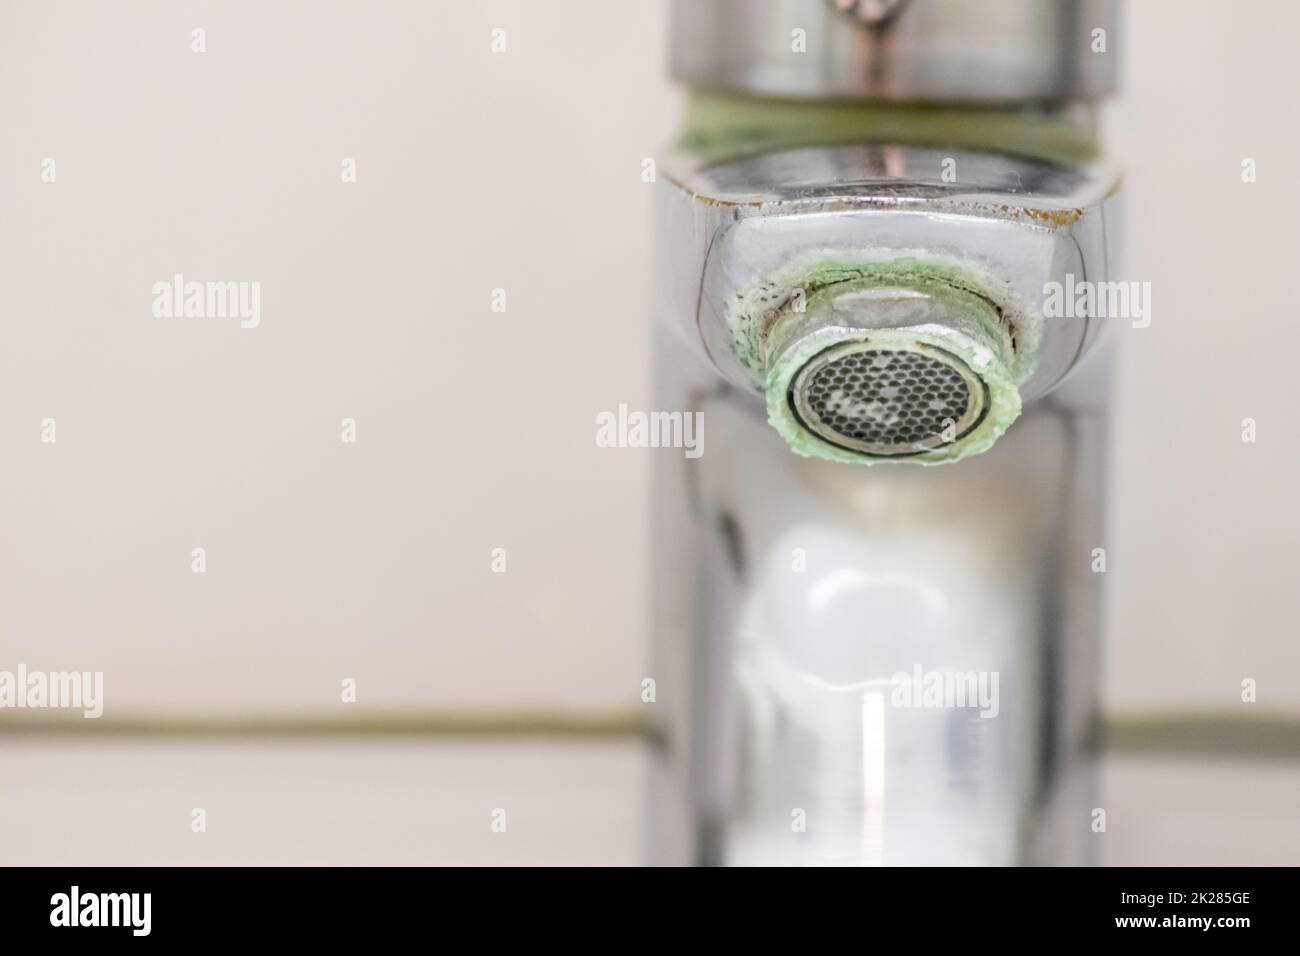 Il vecchio rubinetto graduato come manico calcificato in cromo nel bagno ha bisogno di manutenzione e decalcificazione con detergenti per fermare la perdita e migliorare l'igiene batteri del vecchio manico con la povertà di goccioline Foto Stock